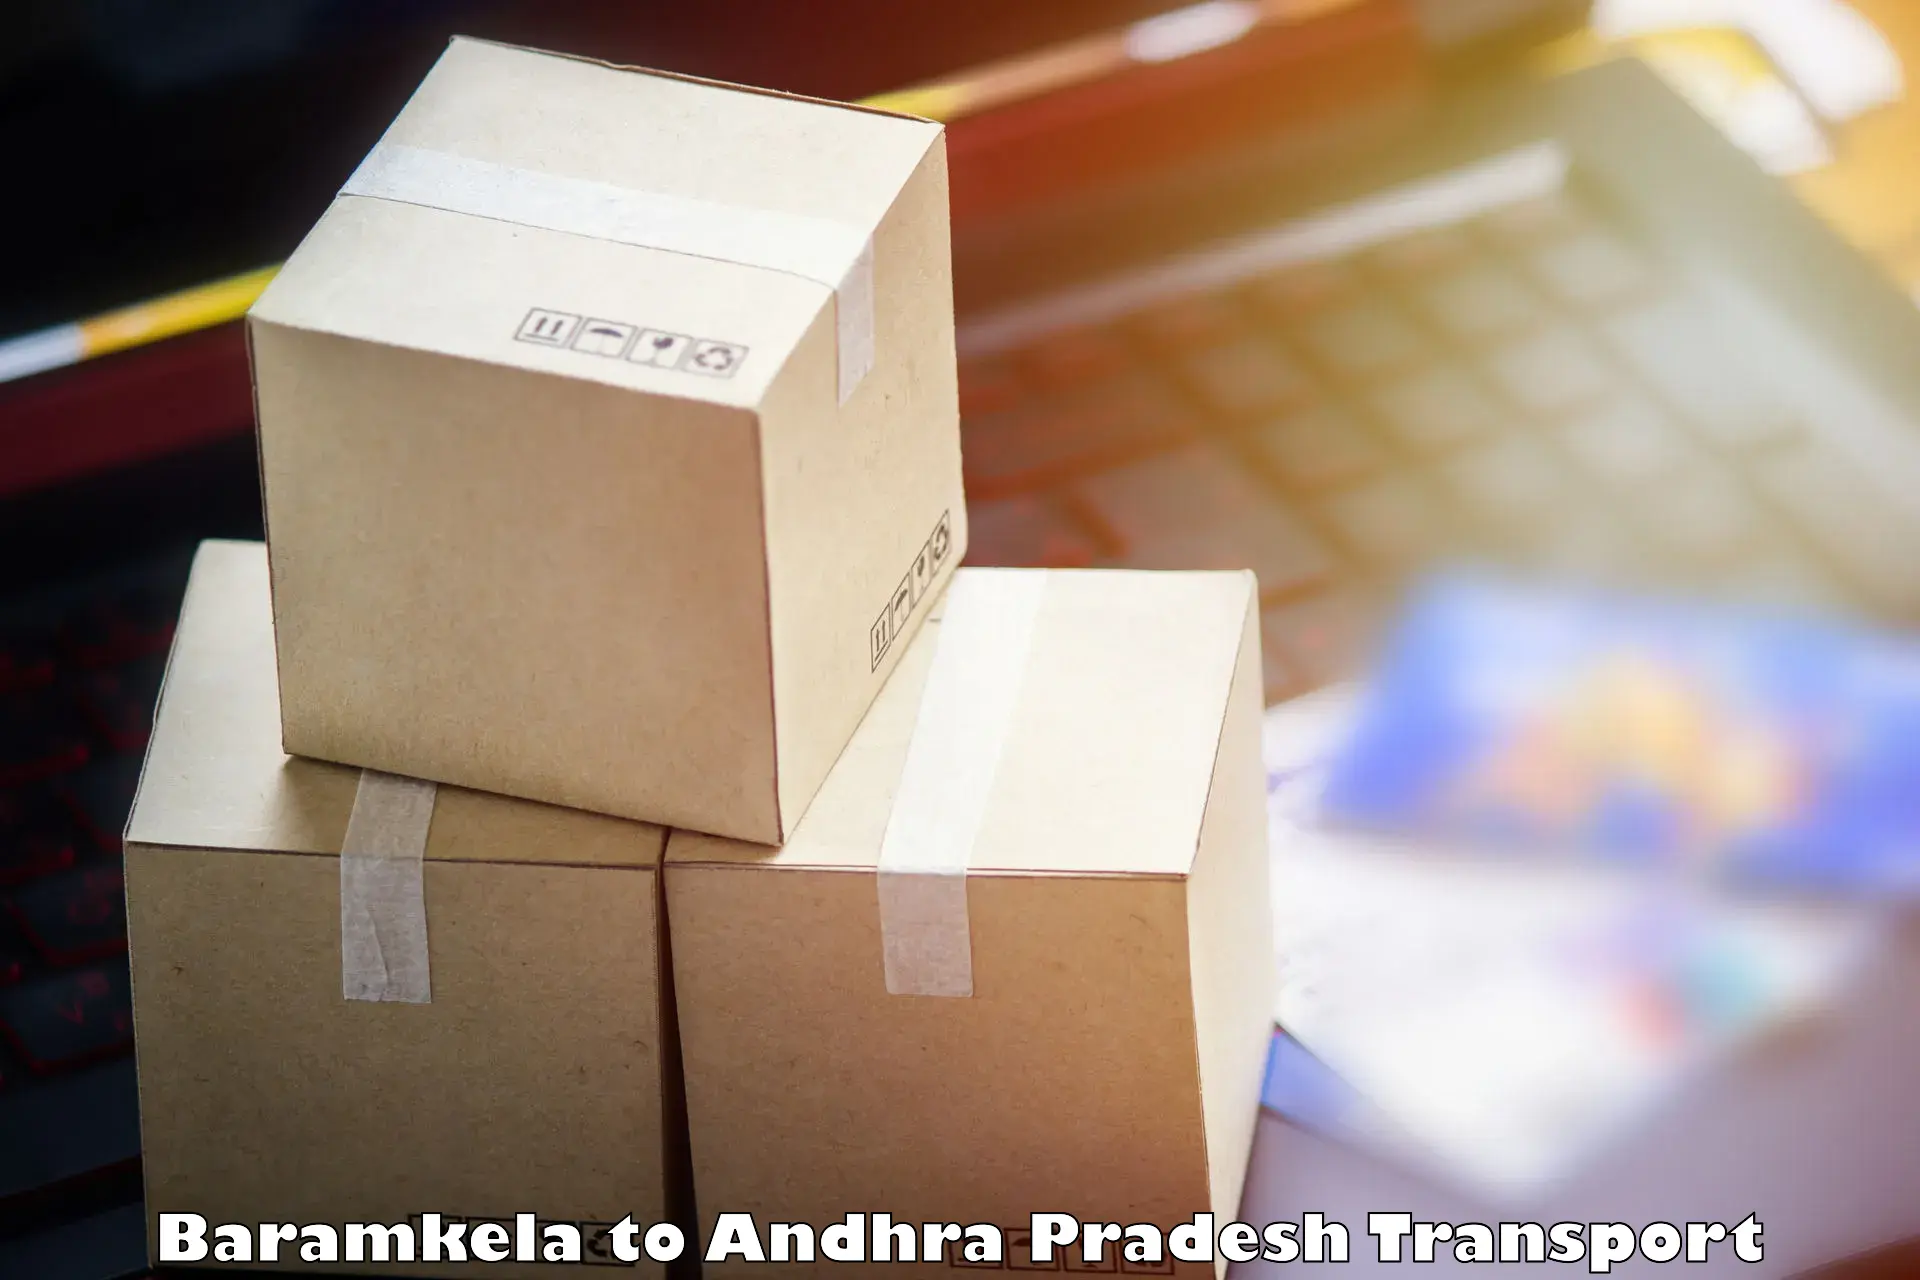 International cargo transportation services Baramkela to Gudivada